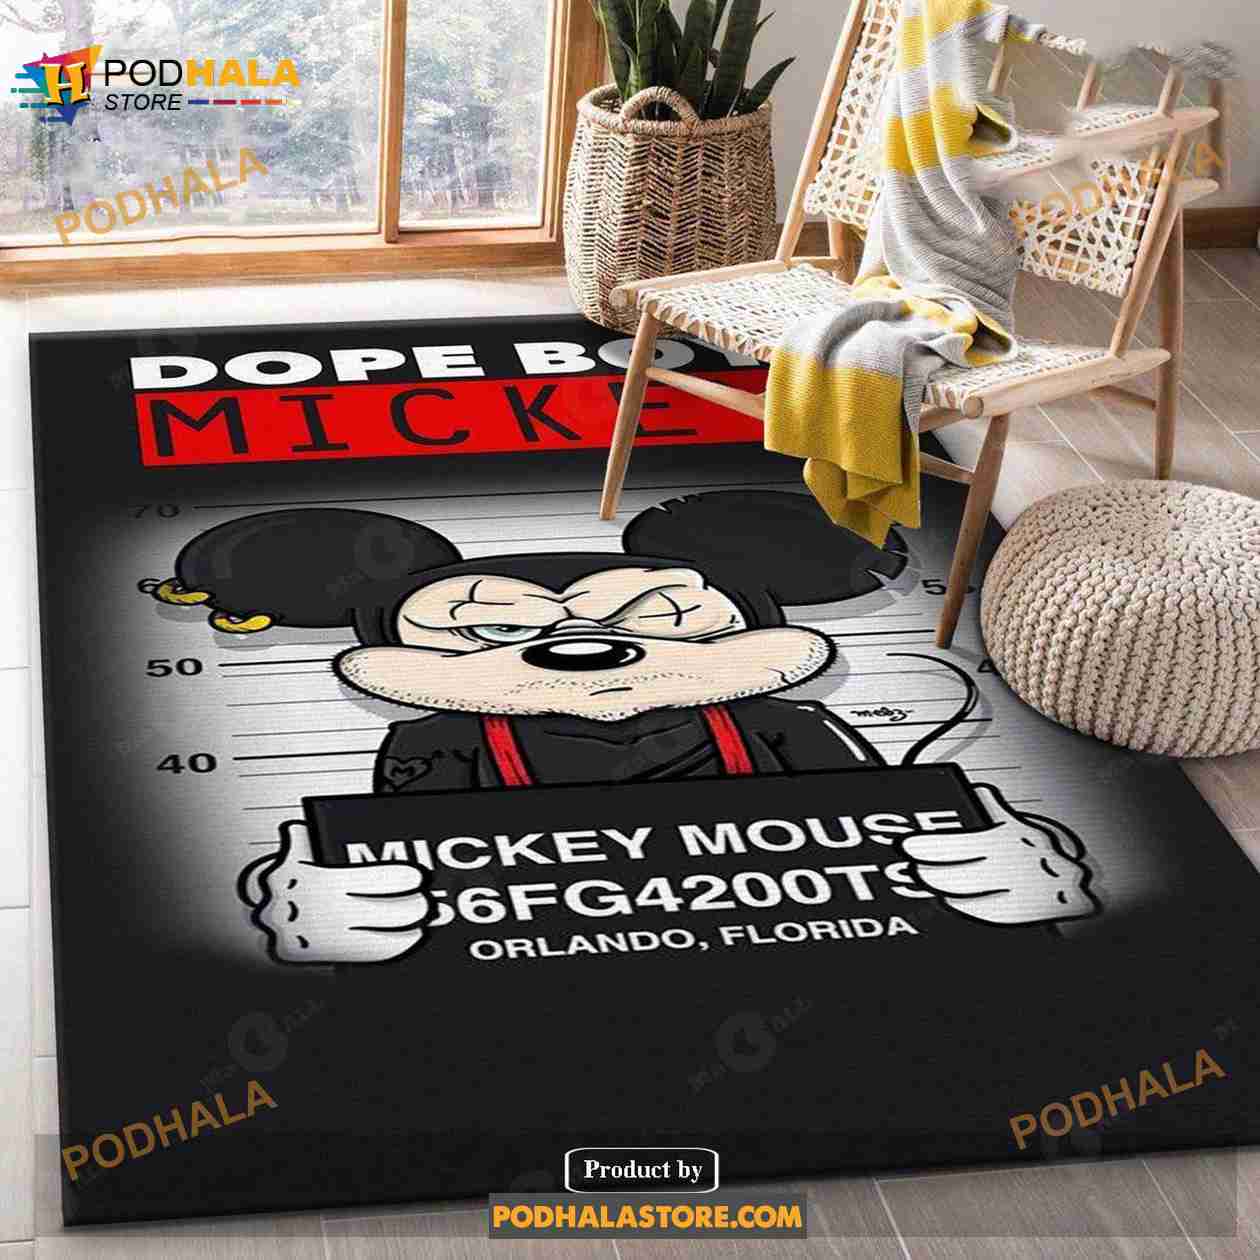 Supreme Mickey Mouse Area Rug For Christmas Kitchen Rug Home Decor